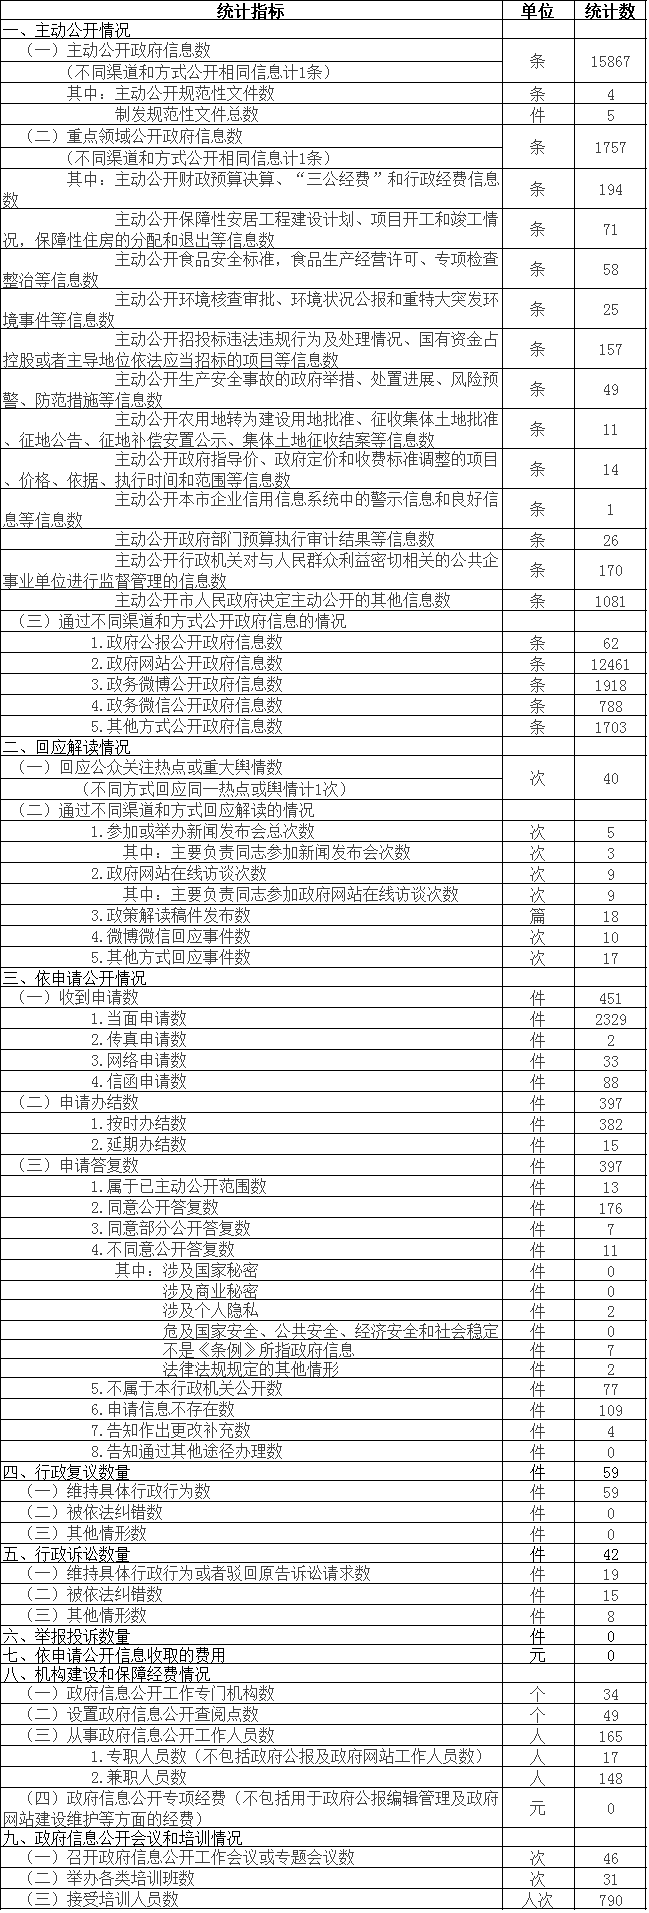 北京市门头沟区政府信息公开情况统计表